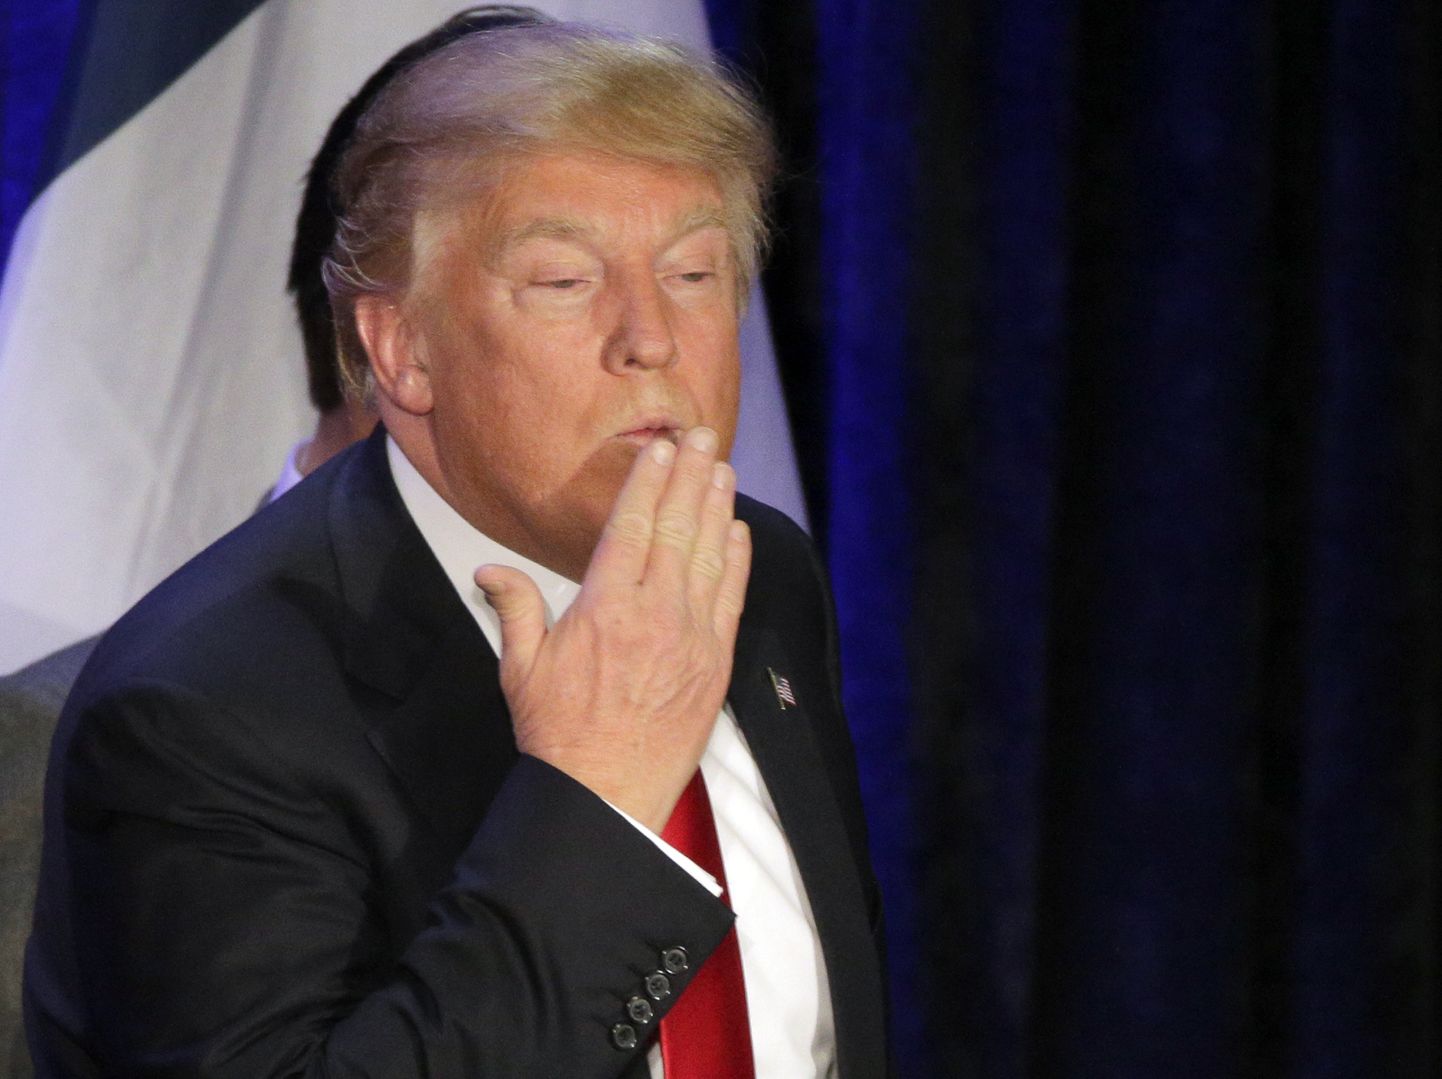 USA presidendi Donald Trumpi endine kampaaniatöötaja andis ta loata suudluse pärast kohtusse.